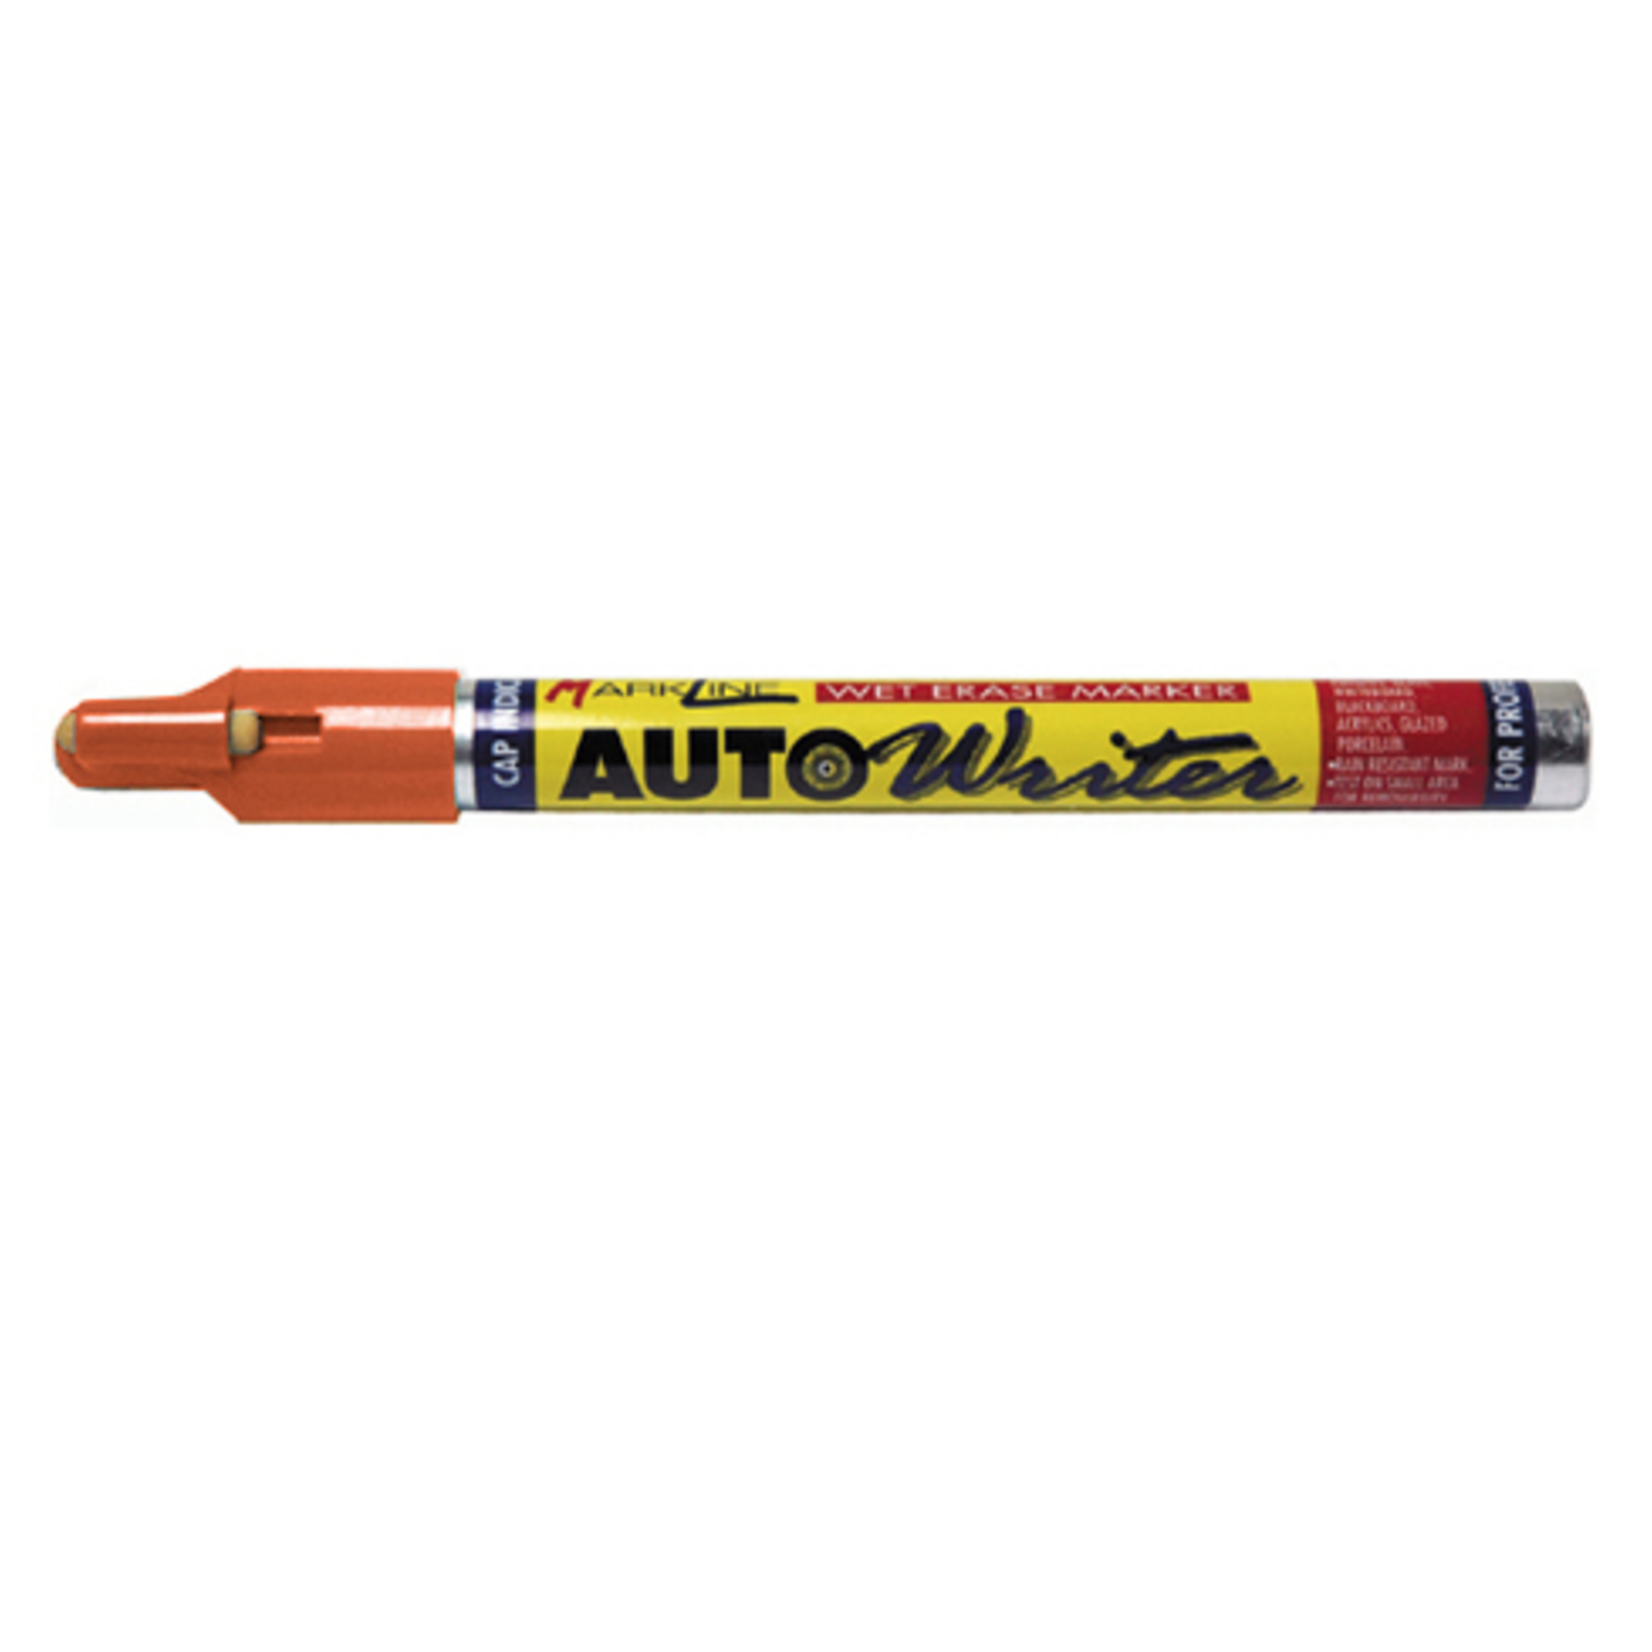 AUTOWRITER Auto Writer Paint Marker